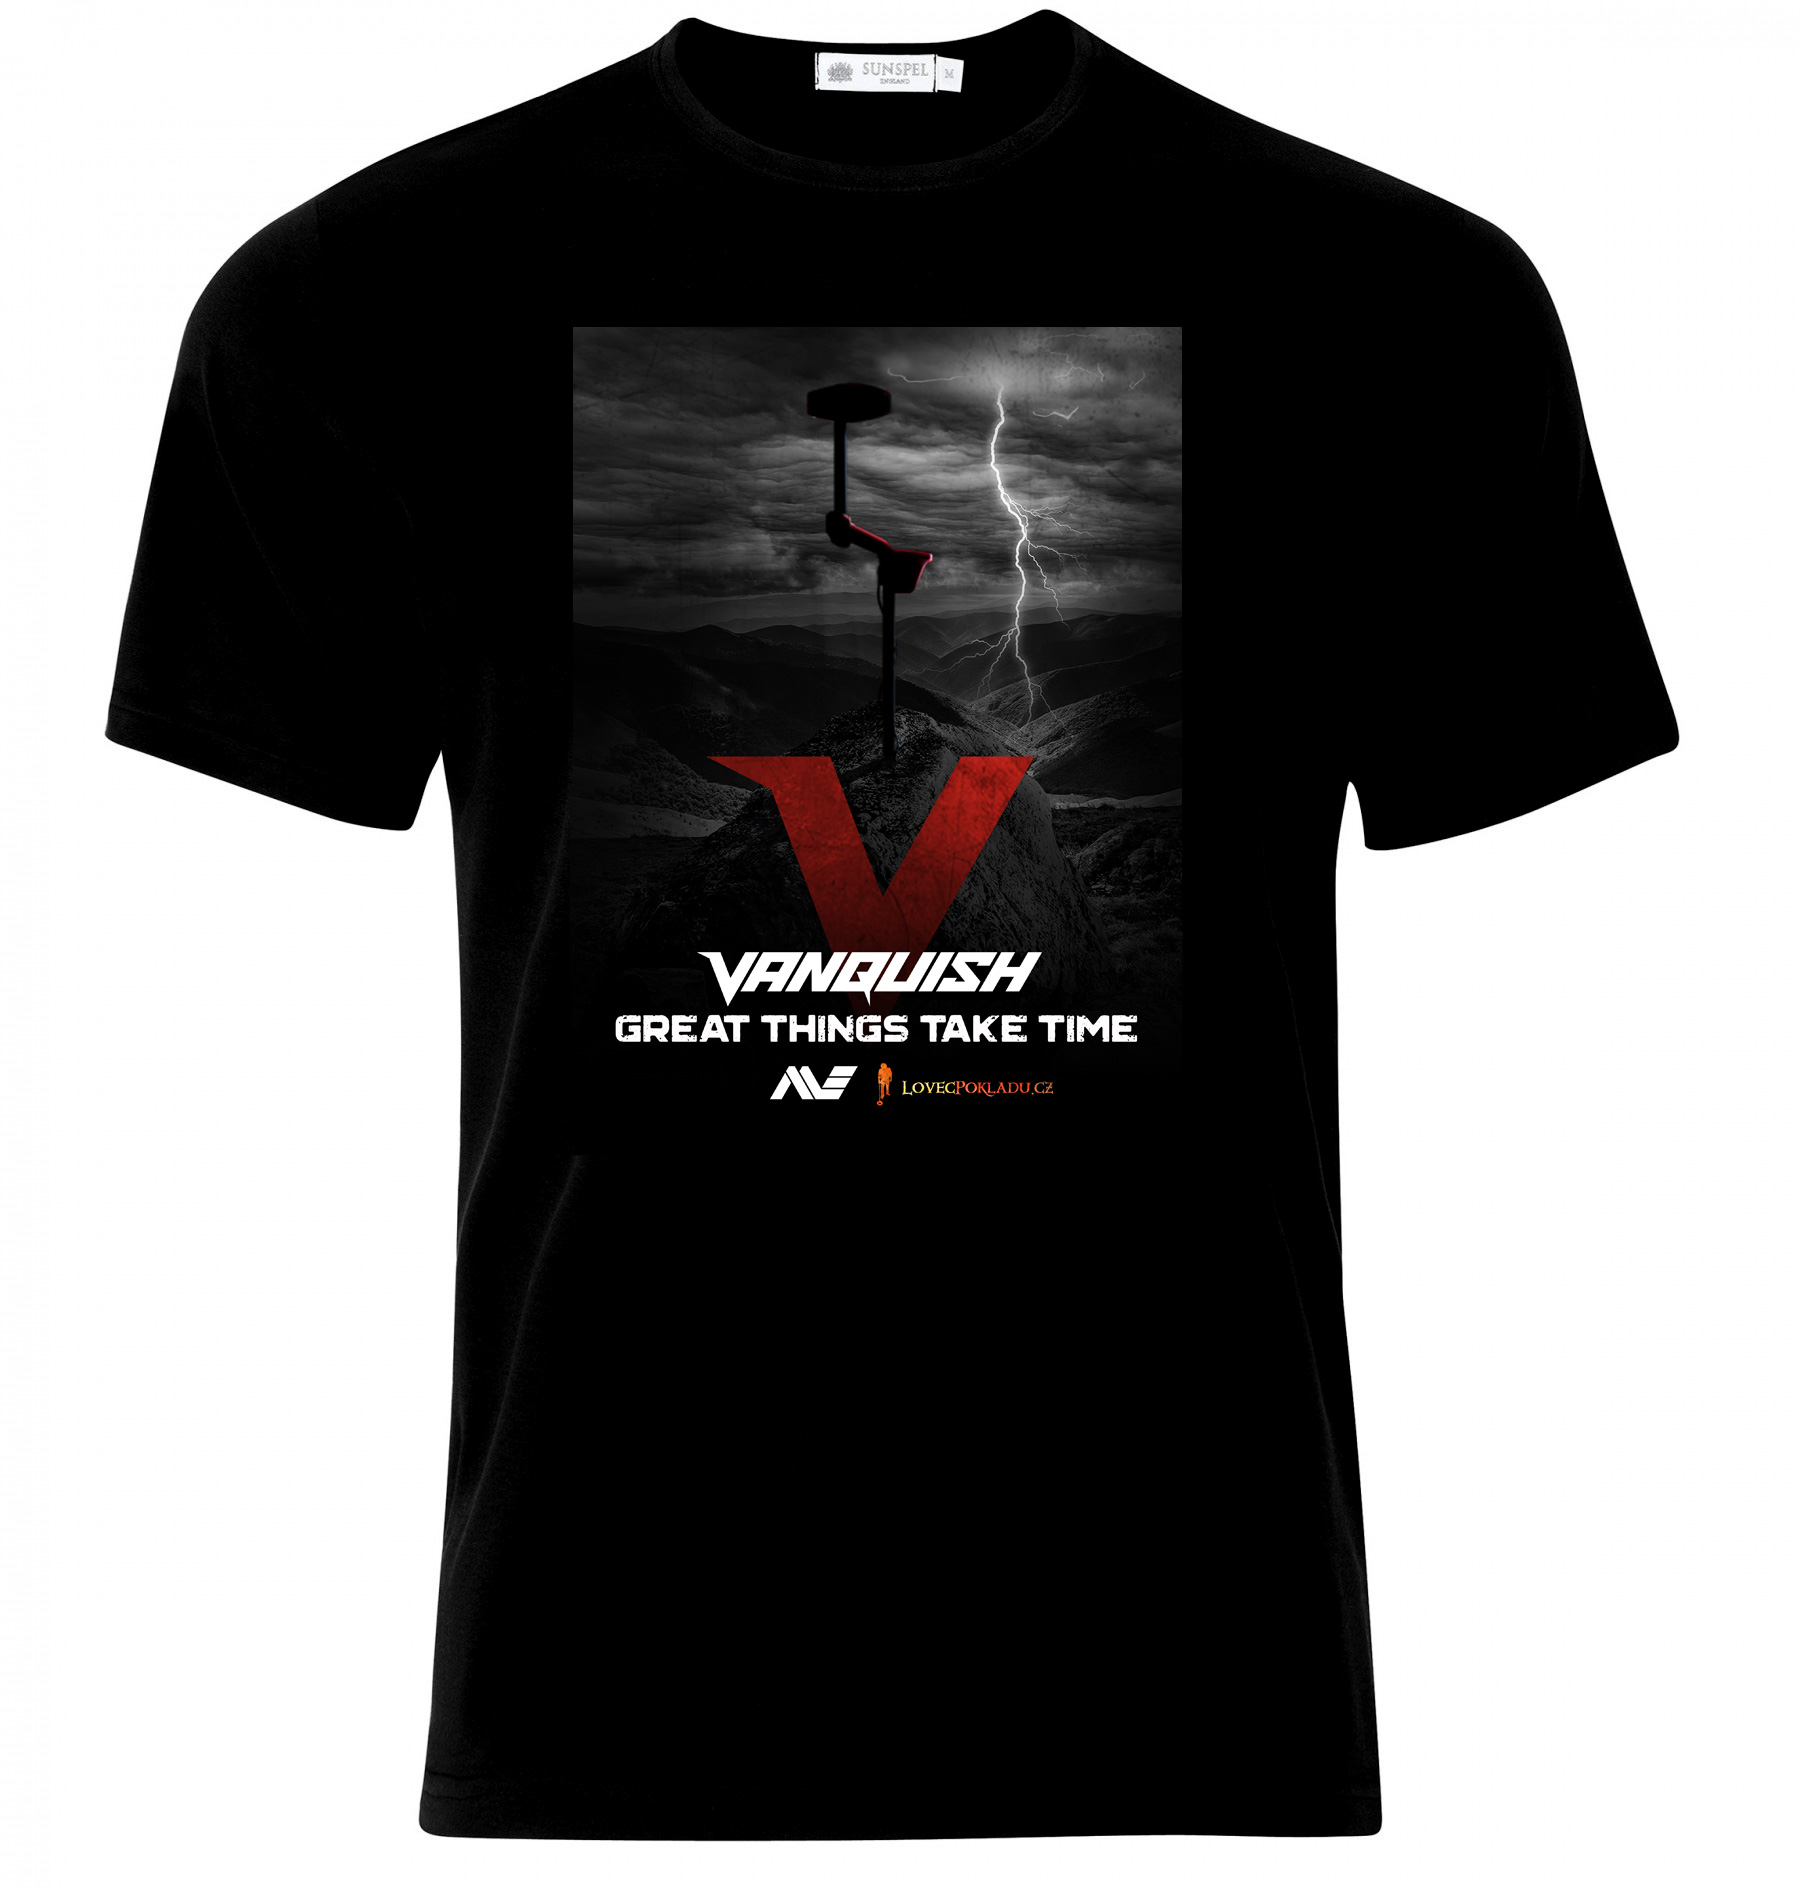 Spezial-T-Shirt für alle, die auf Vanquish warten